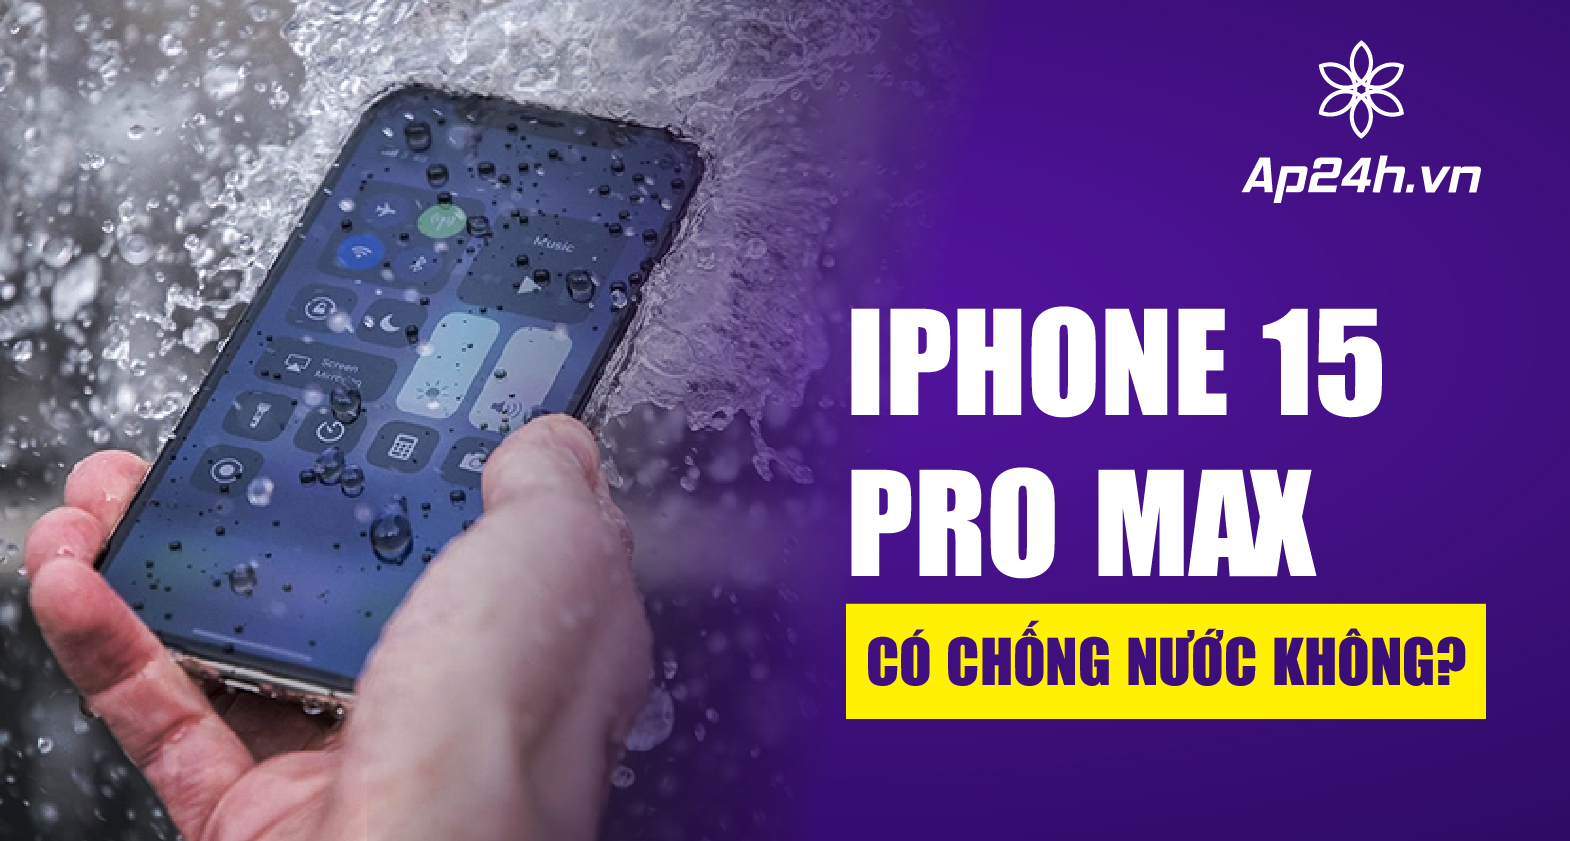 iPhone 15 Pro Max có chống nước không